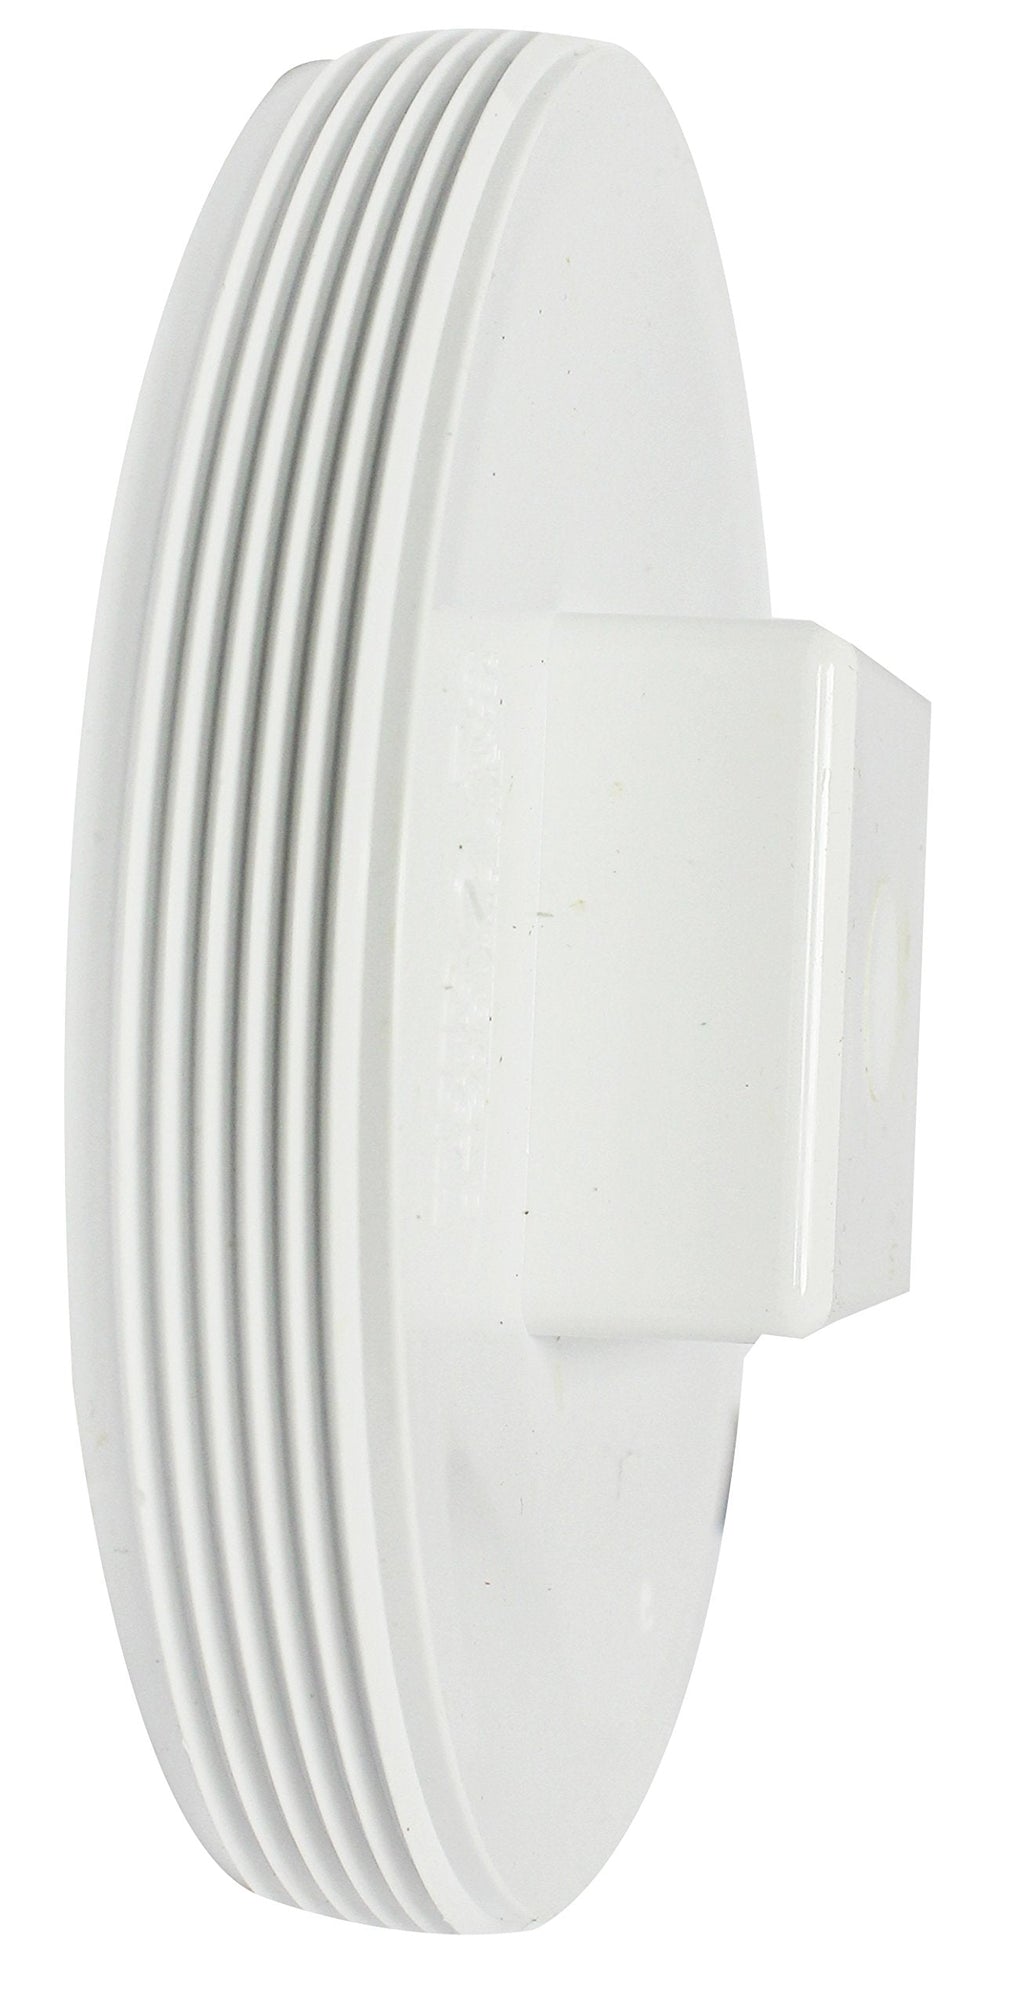 Canplas 193057S PVC DWV Cleanout Plug with Line, 6-Inch